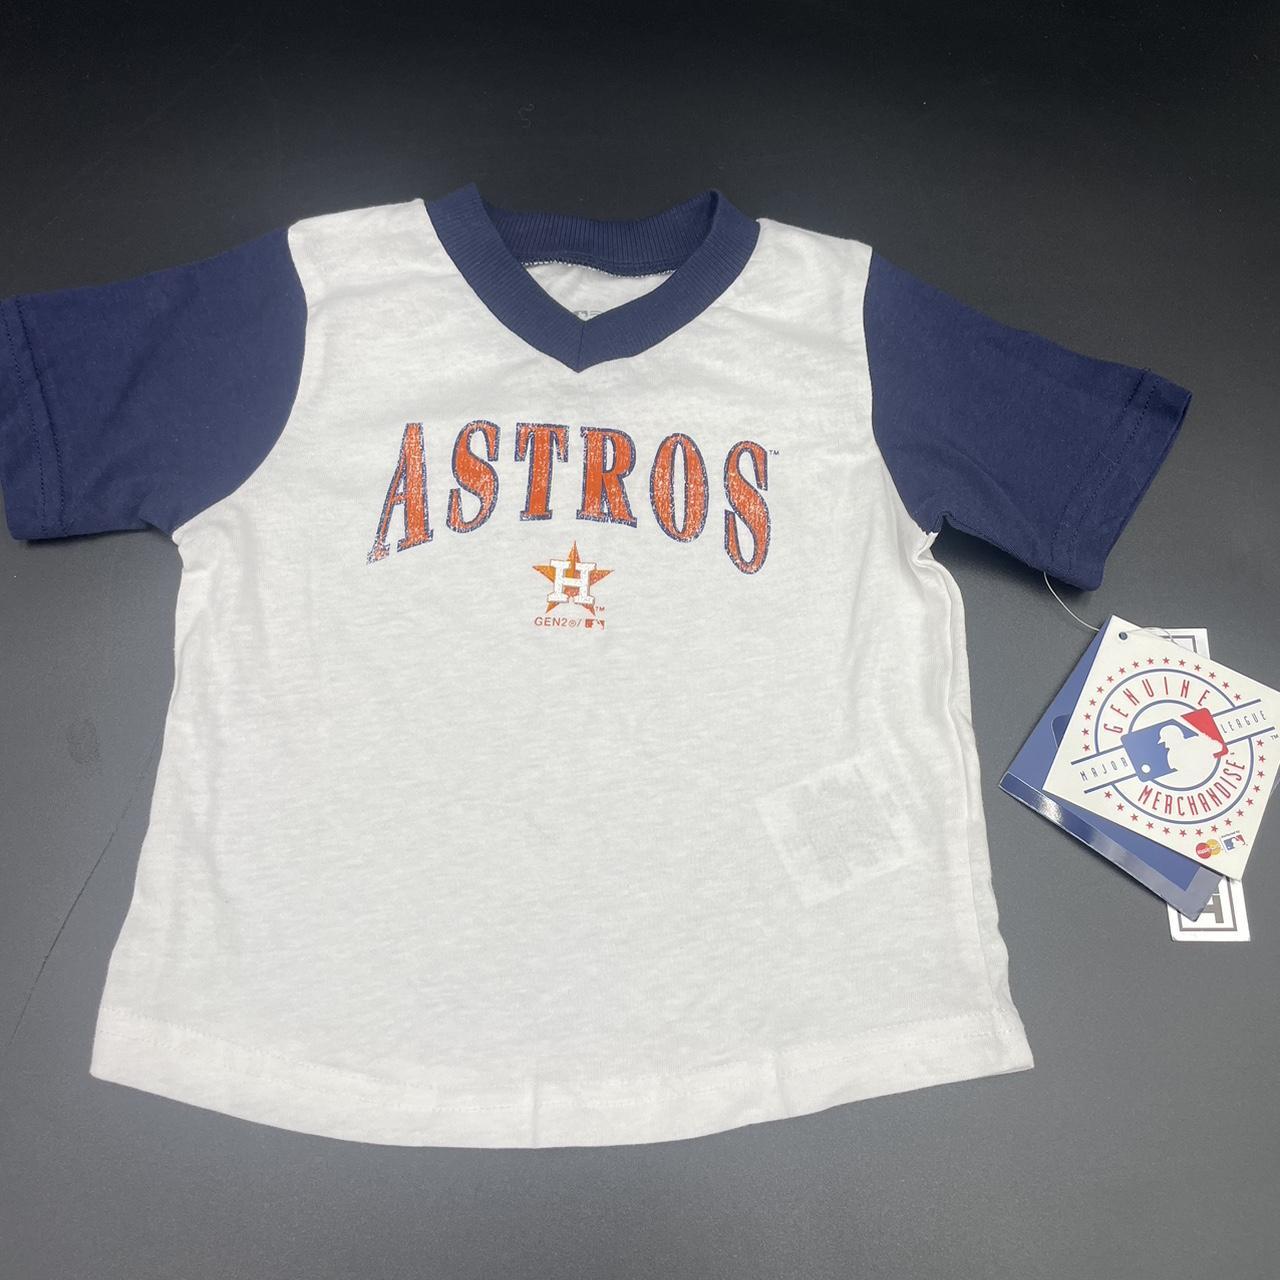 Astros Genuine Merchandise 18 Months short sleeve - Depop